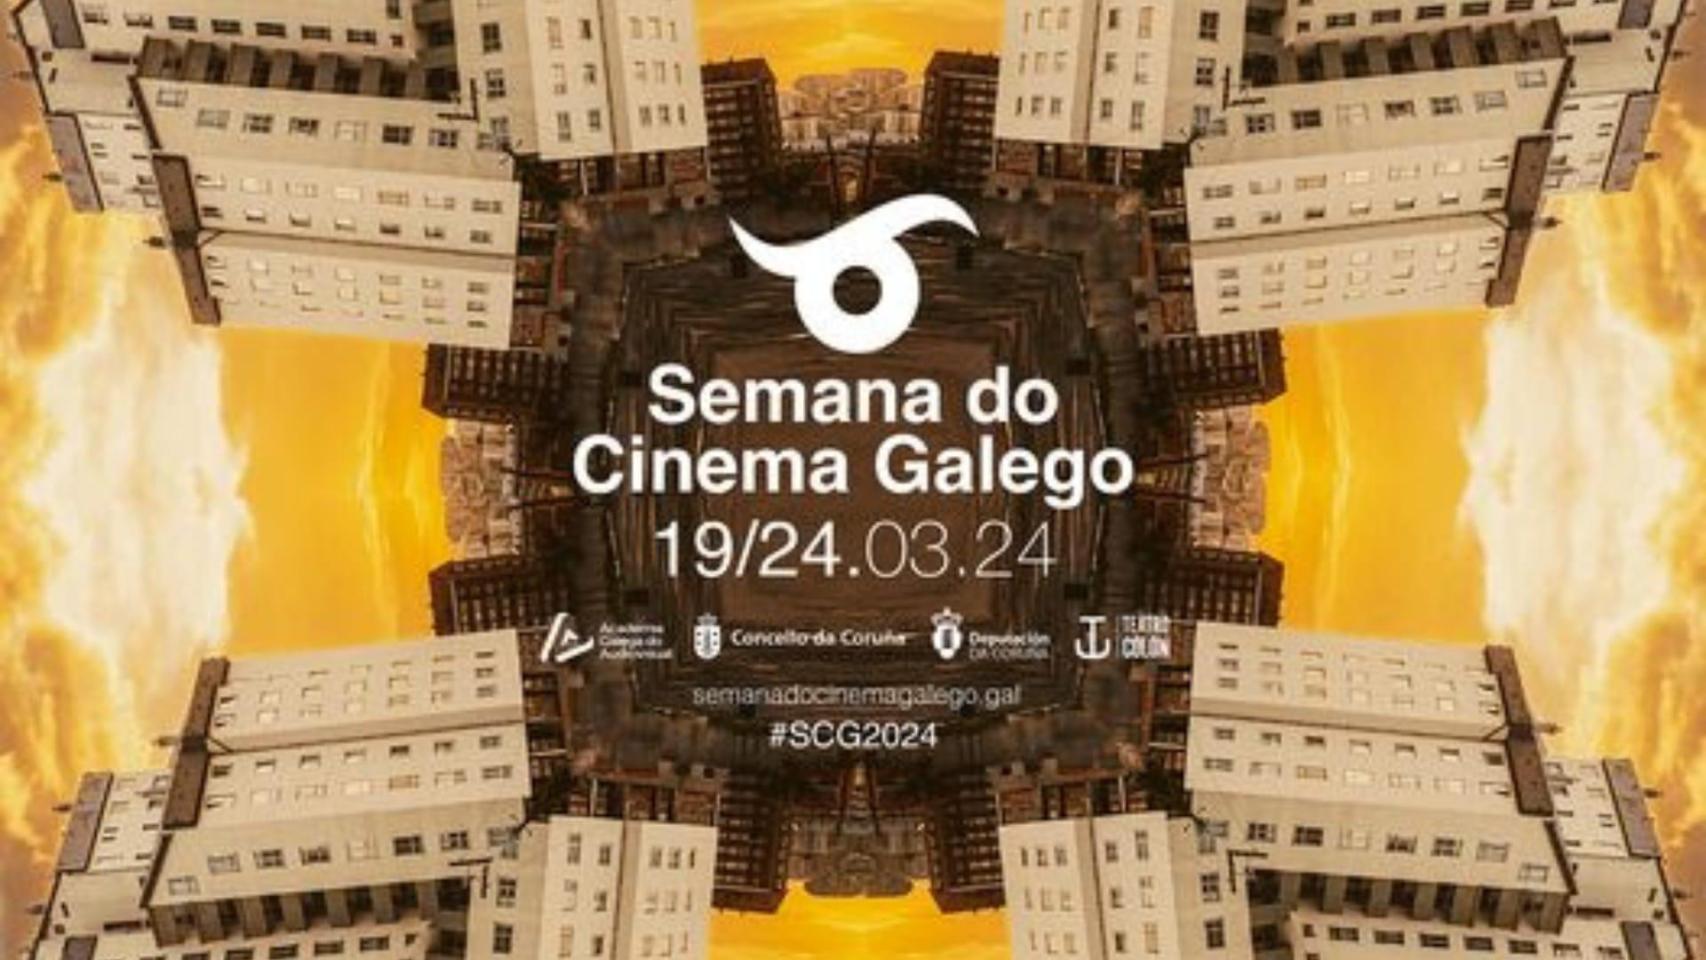 Semana do Cinema Galego 2024 en A Coruña: Ocho filmes gratuitos del 19 al 24 de marzo